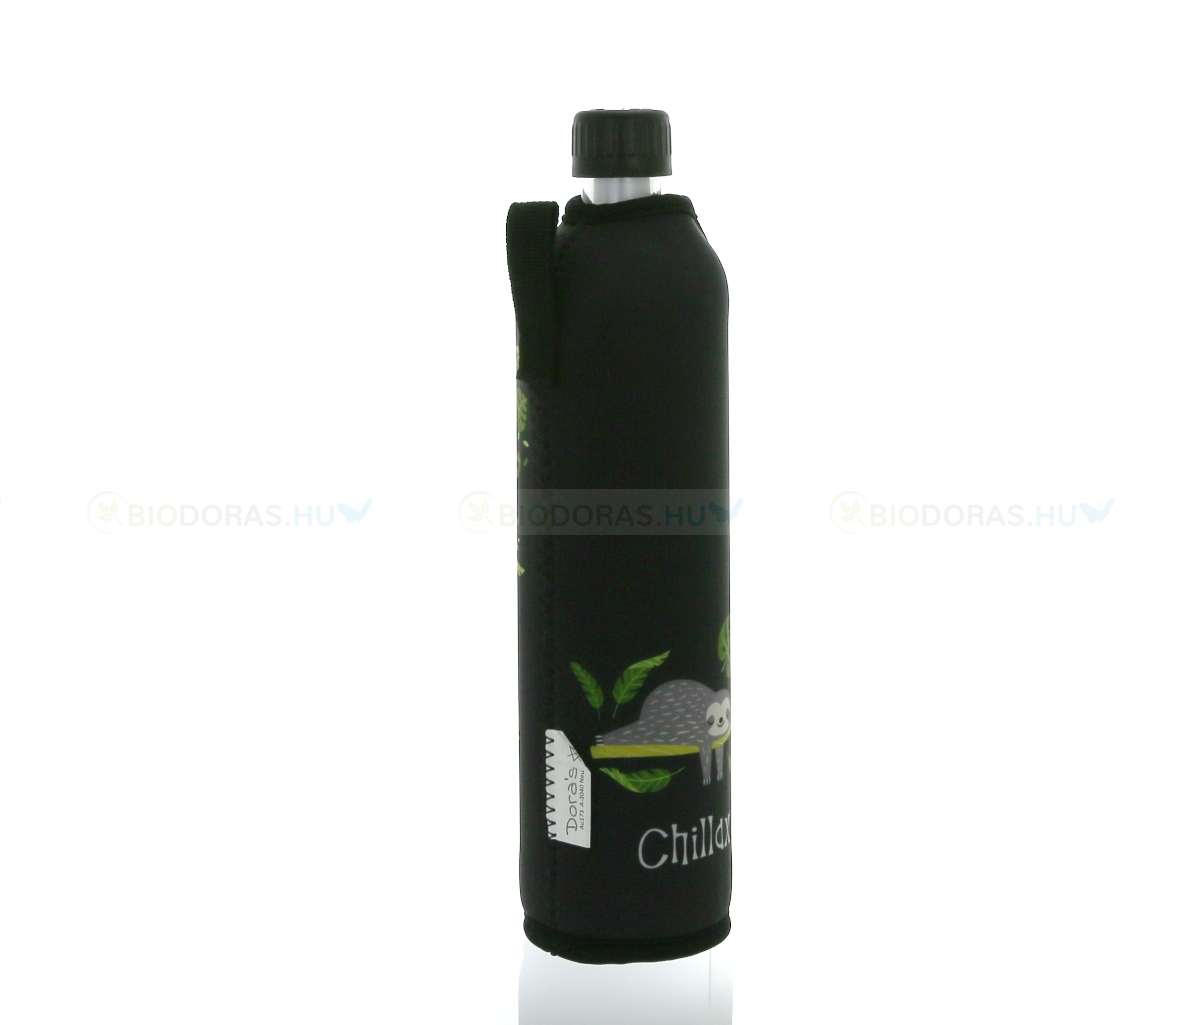 DORAS Üvegkulacs (üvegpalack) fekete alapon, szürke lajhár mintás neoprén huzattal - 500 ml